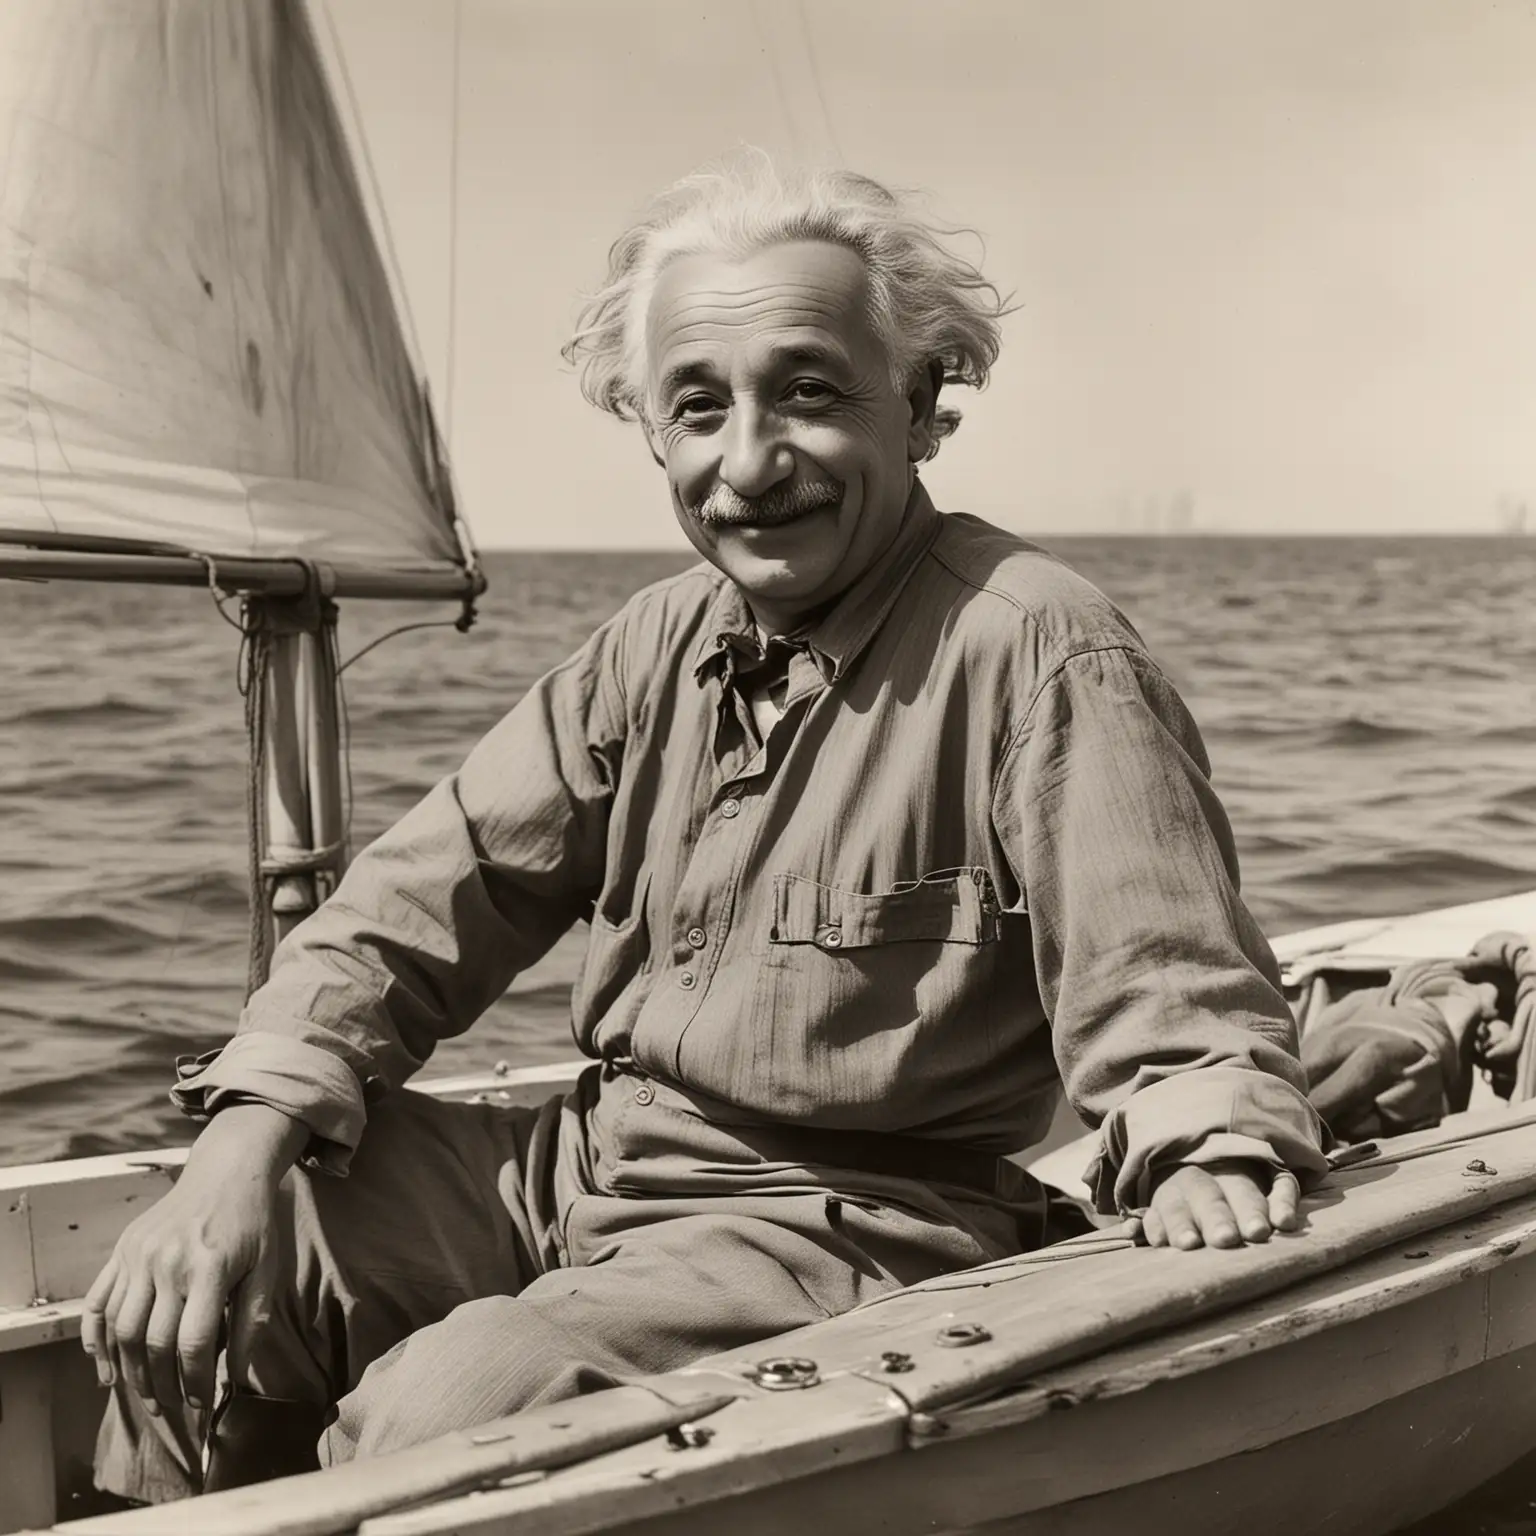 Albert Einstein Sailing in Dinghy with Joyful Expression